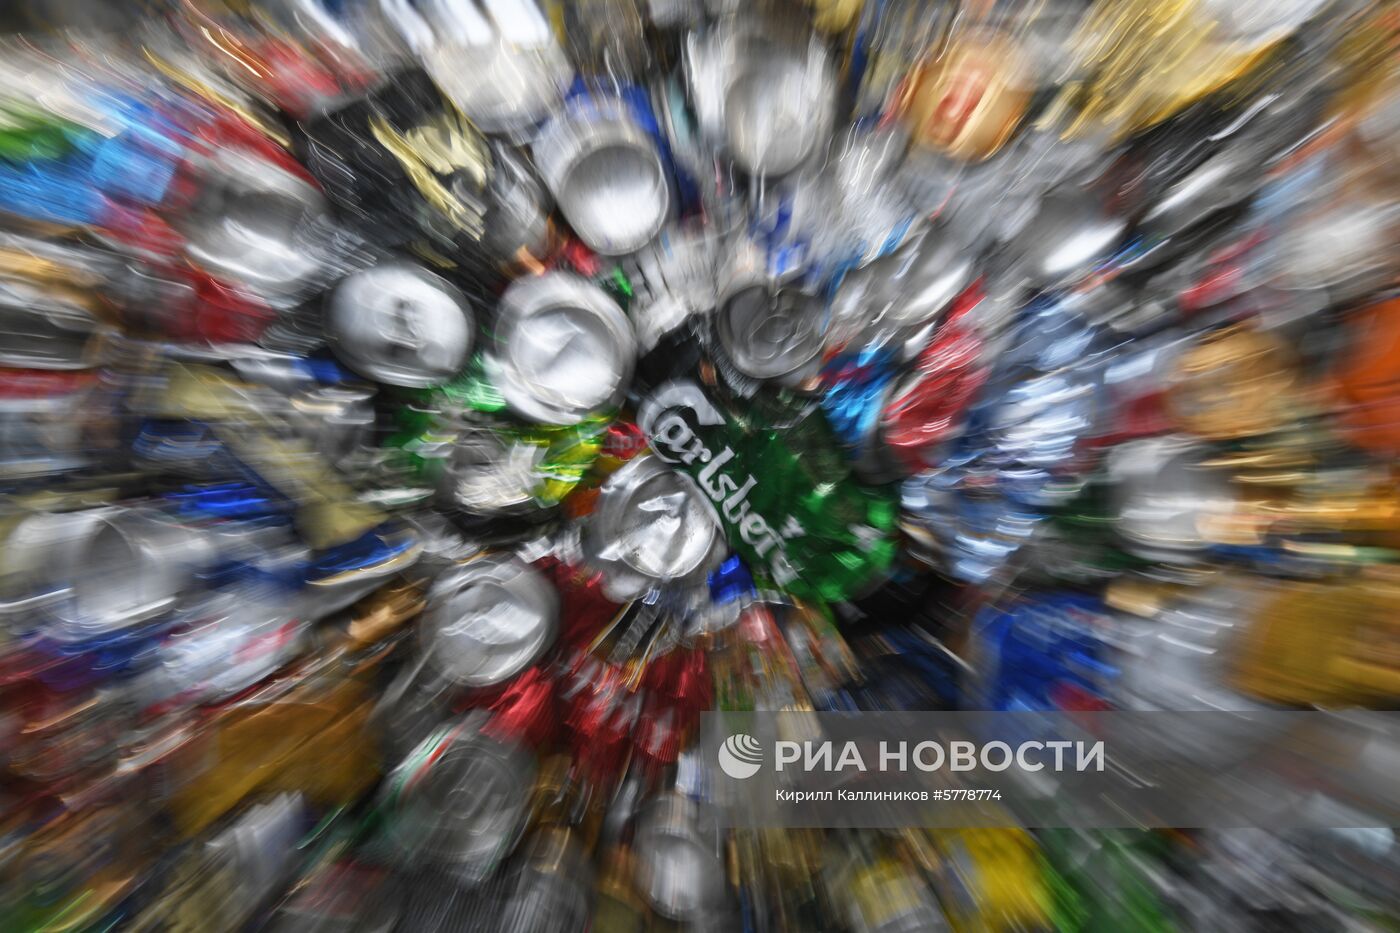 Завод по переработке отходов в Подмосковье  